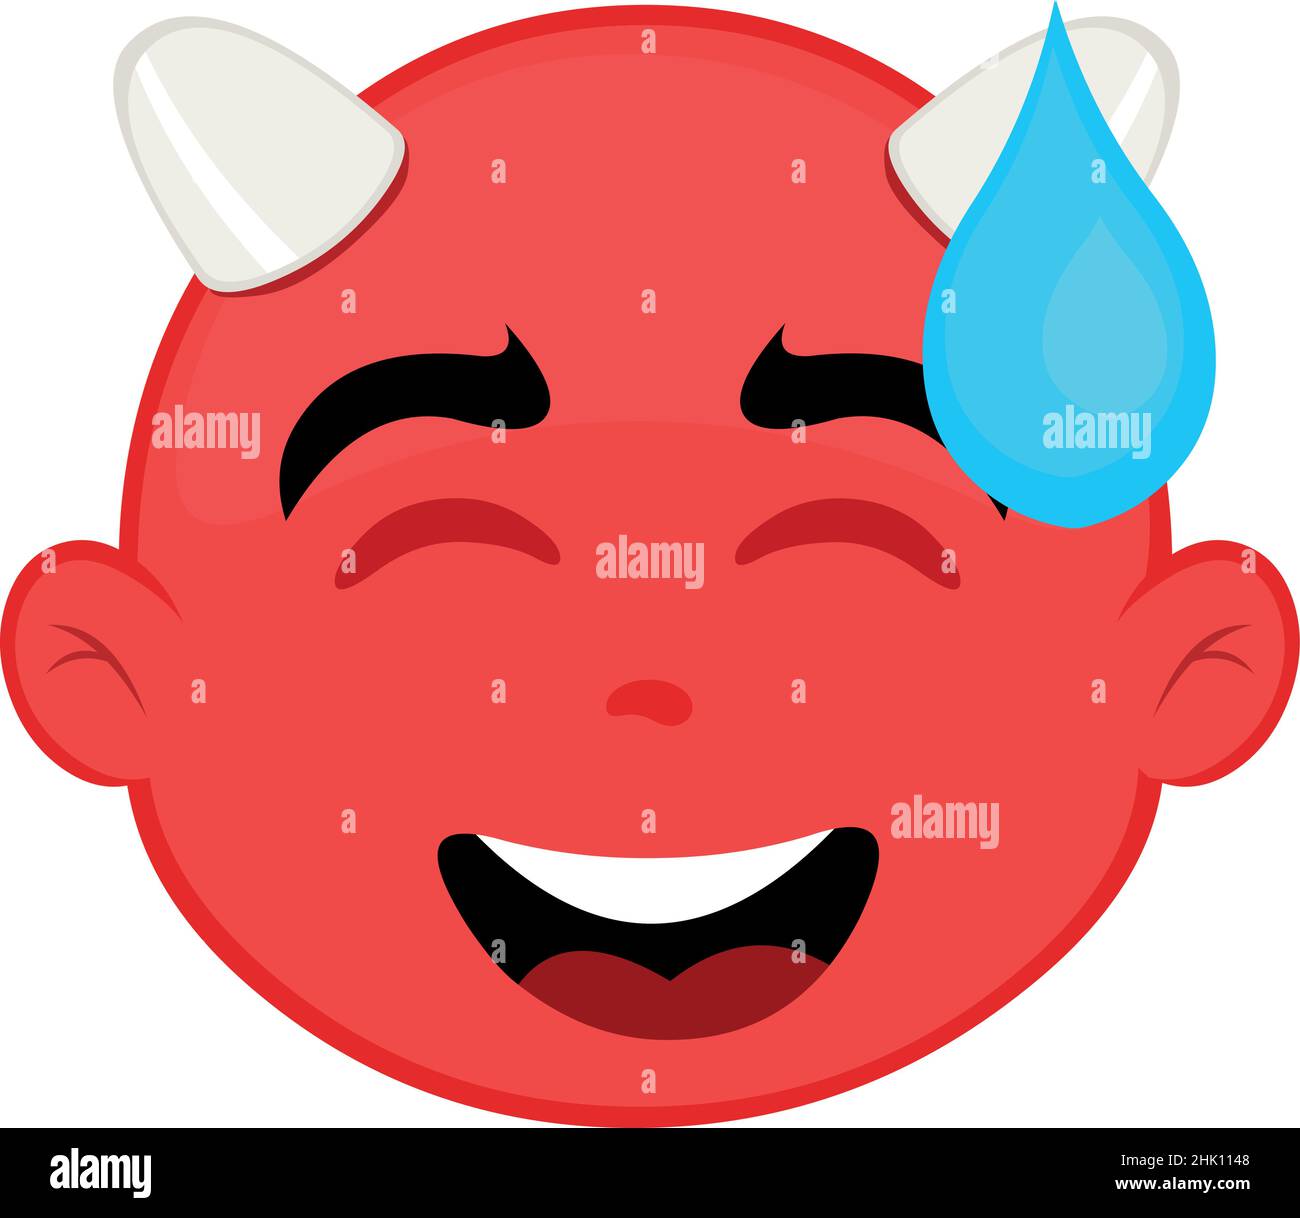 Illustrazione vettoriale del volto di un diavolo cartoon con un'espressione imbarazzata e una goccia di sudorazione che cade dalla sua testa Illustrazione Vettoriale